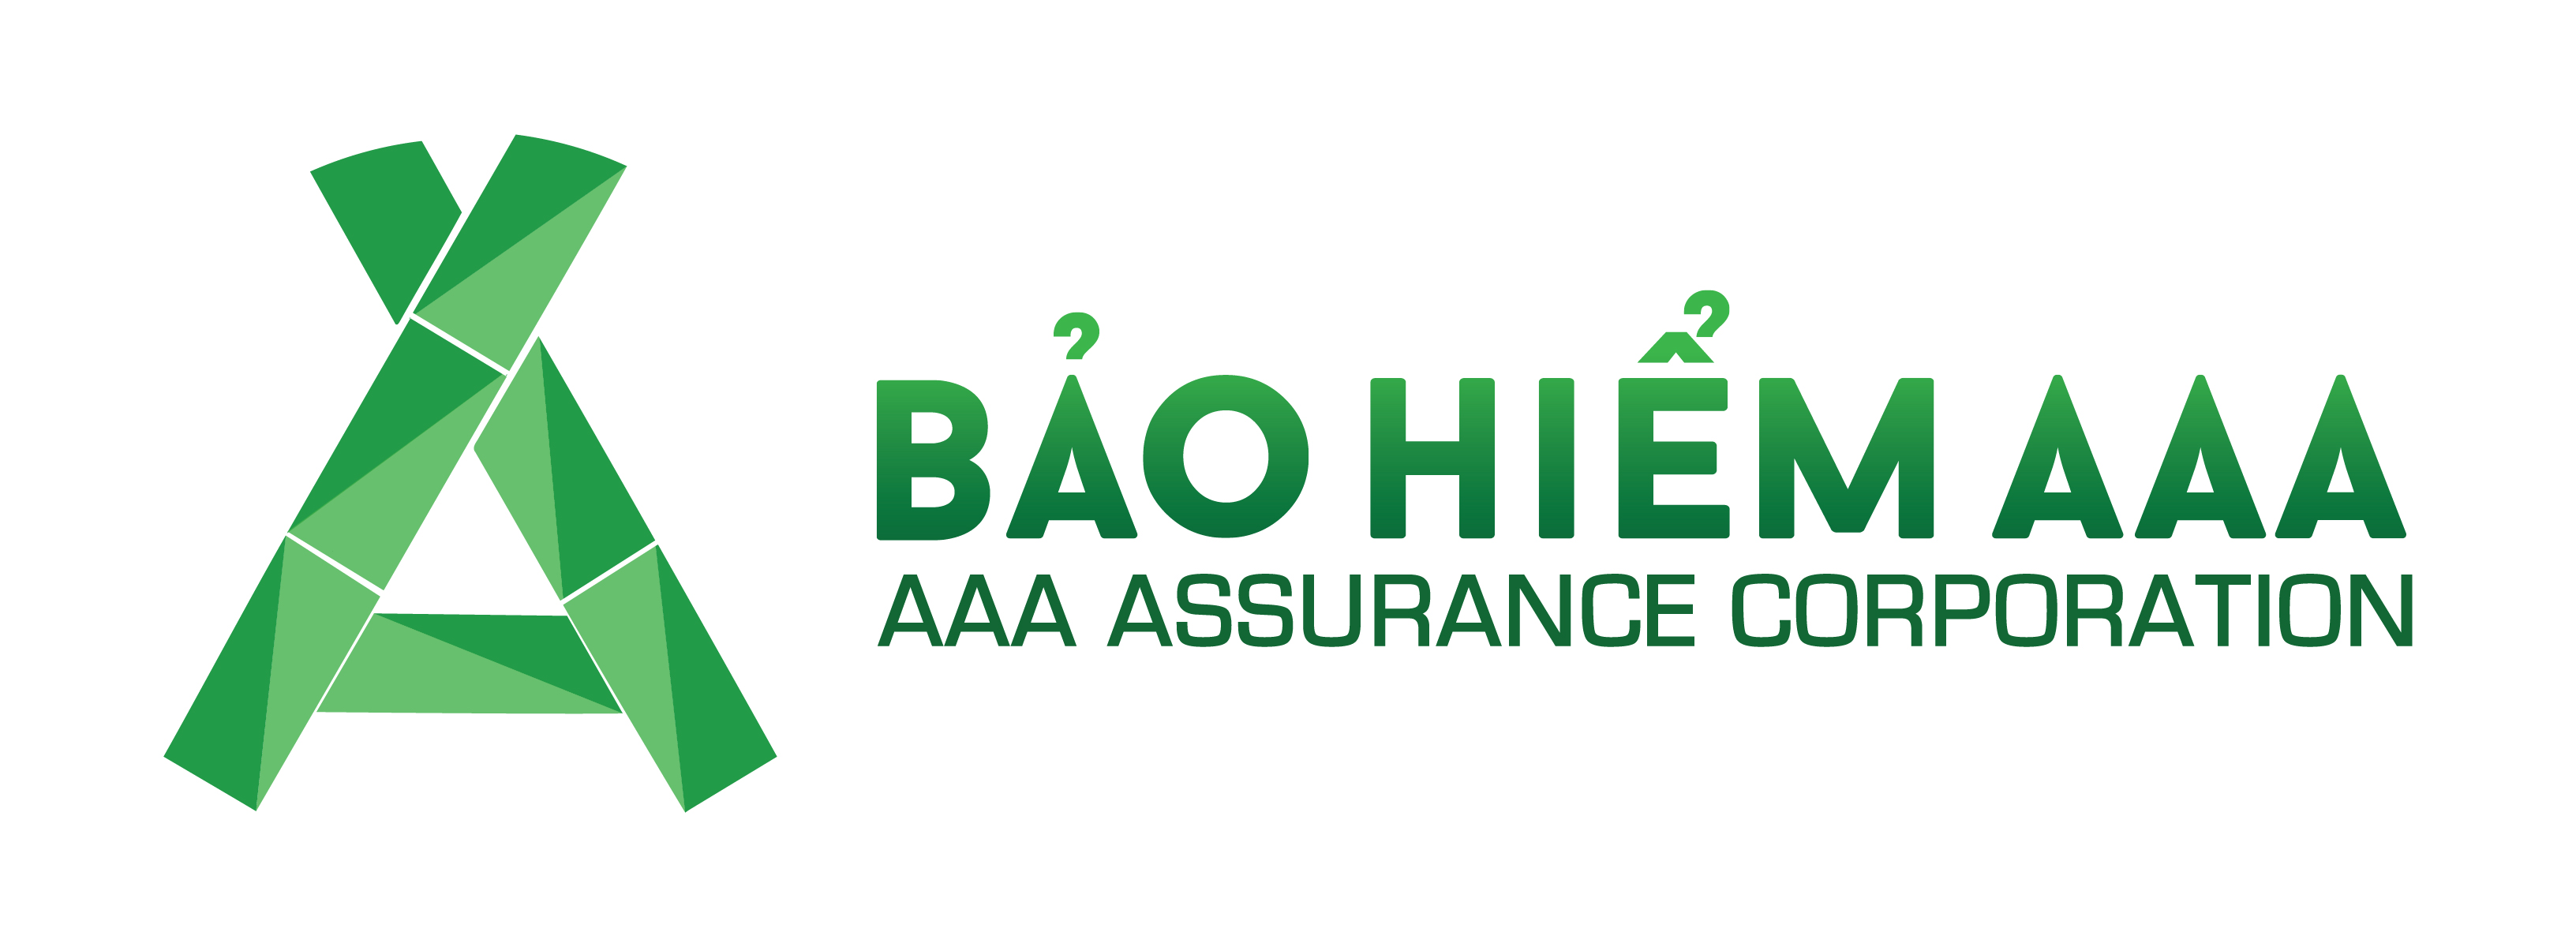 AAA Assurance Corporation